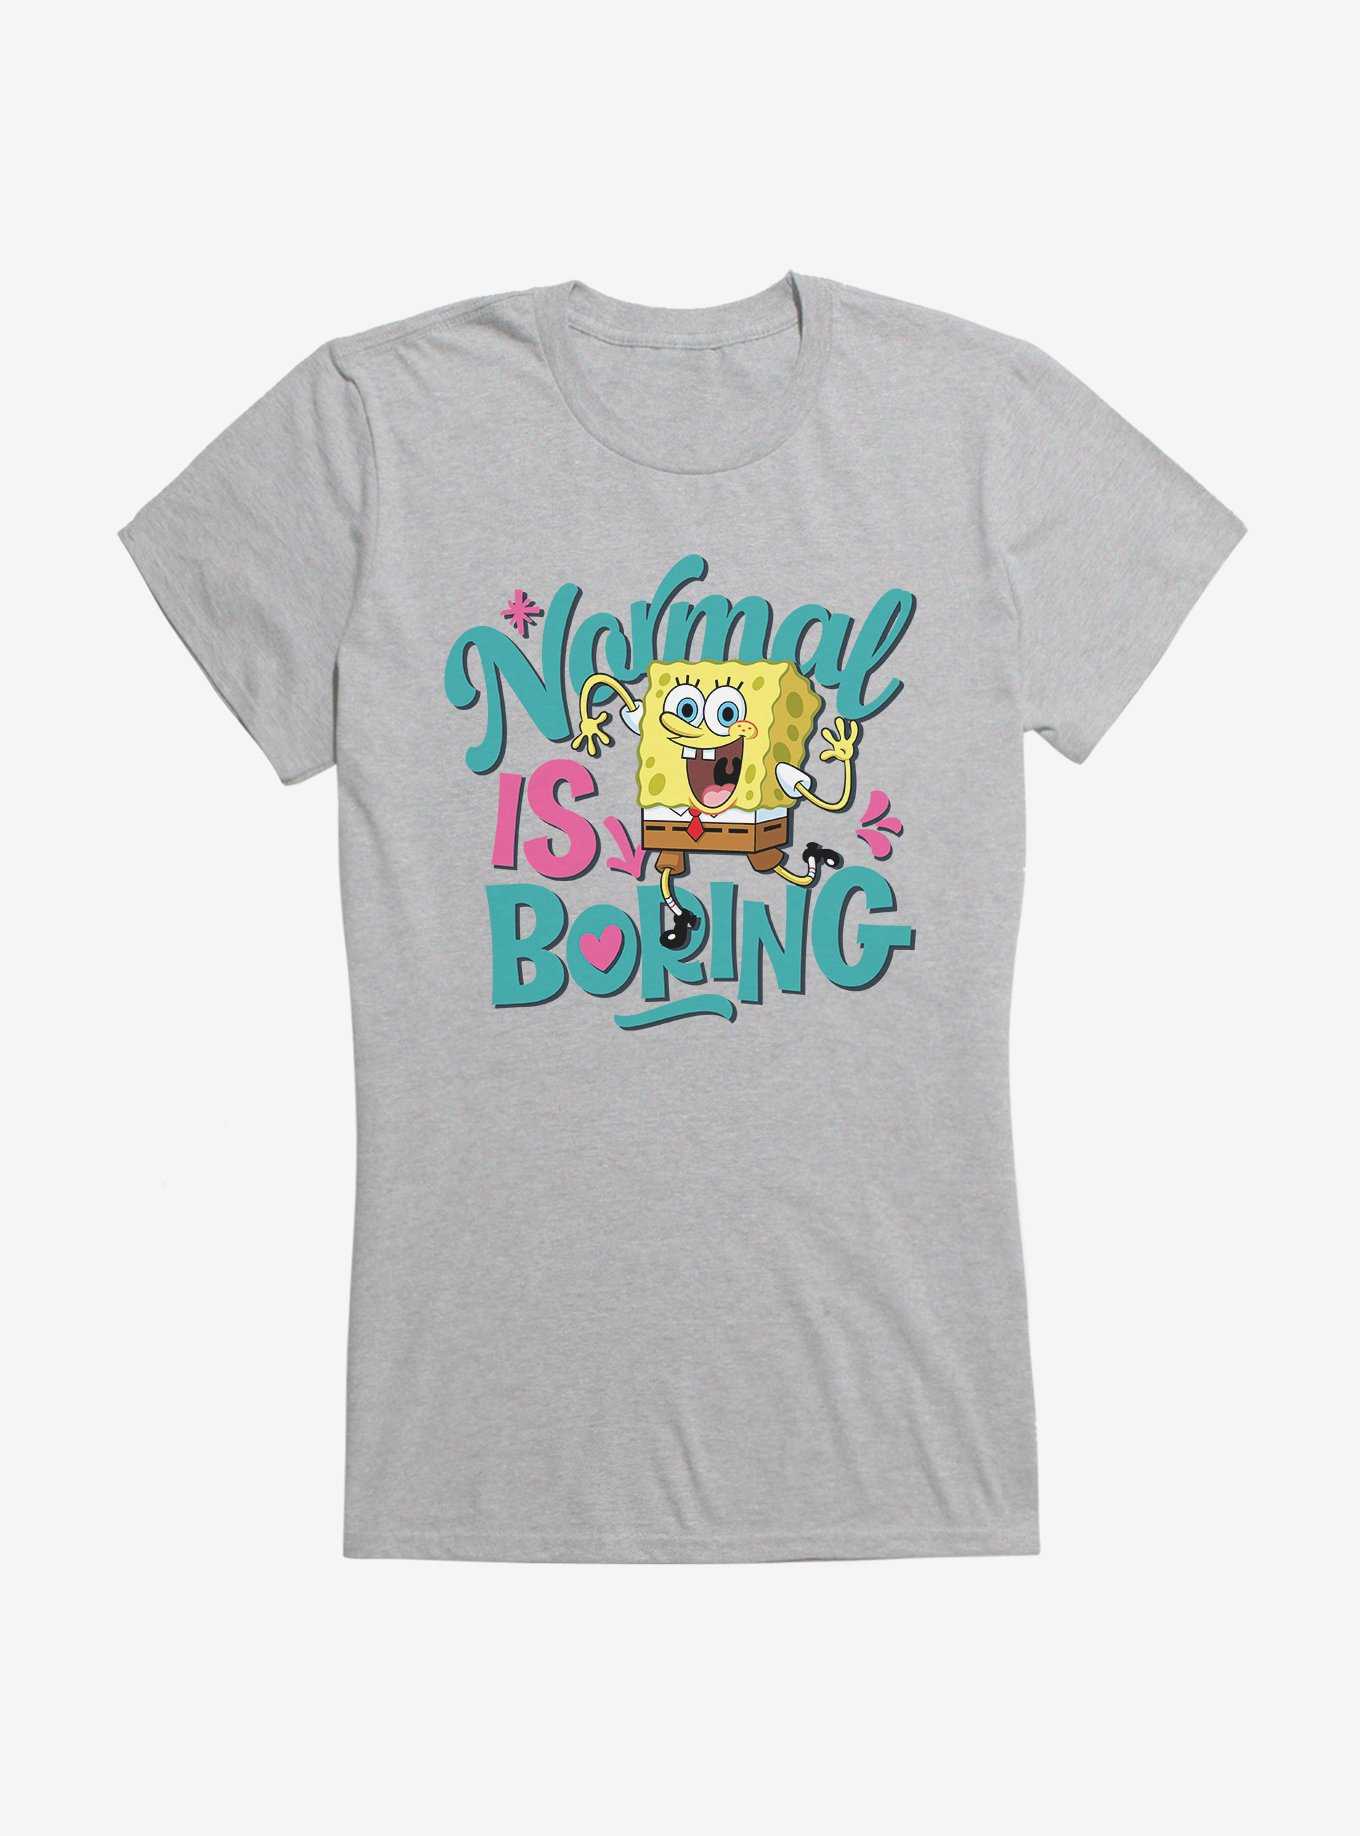 SpongeBob SquarePants Normal Is Boring Girls T-Shirt, , hi-res